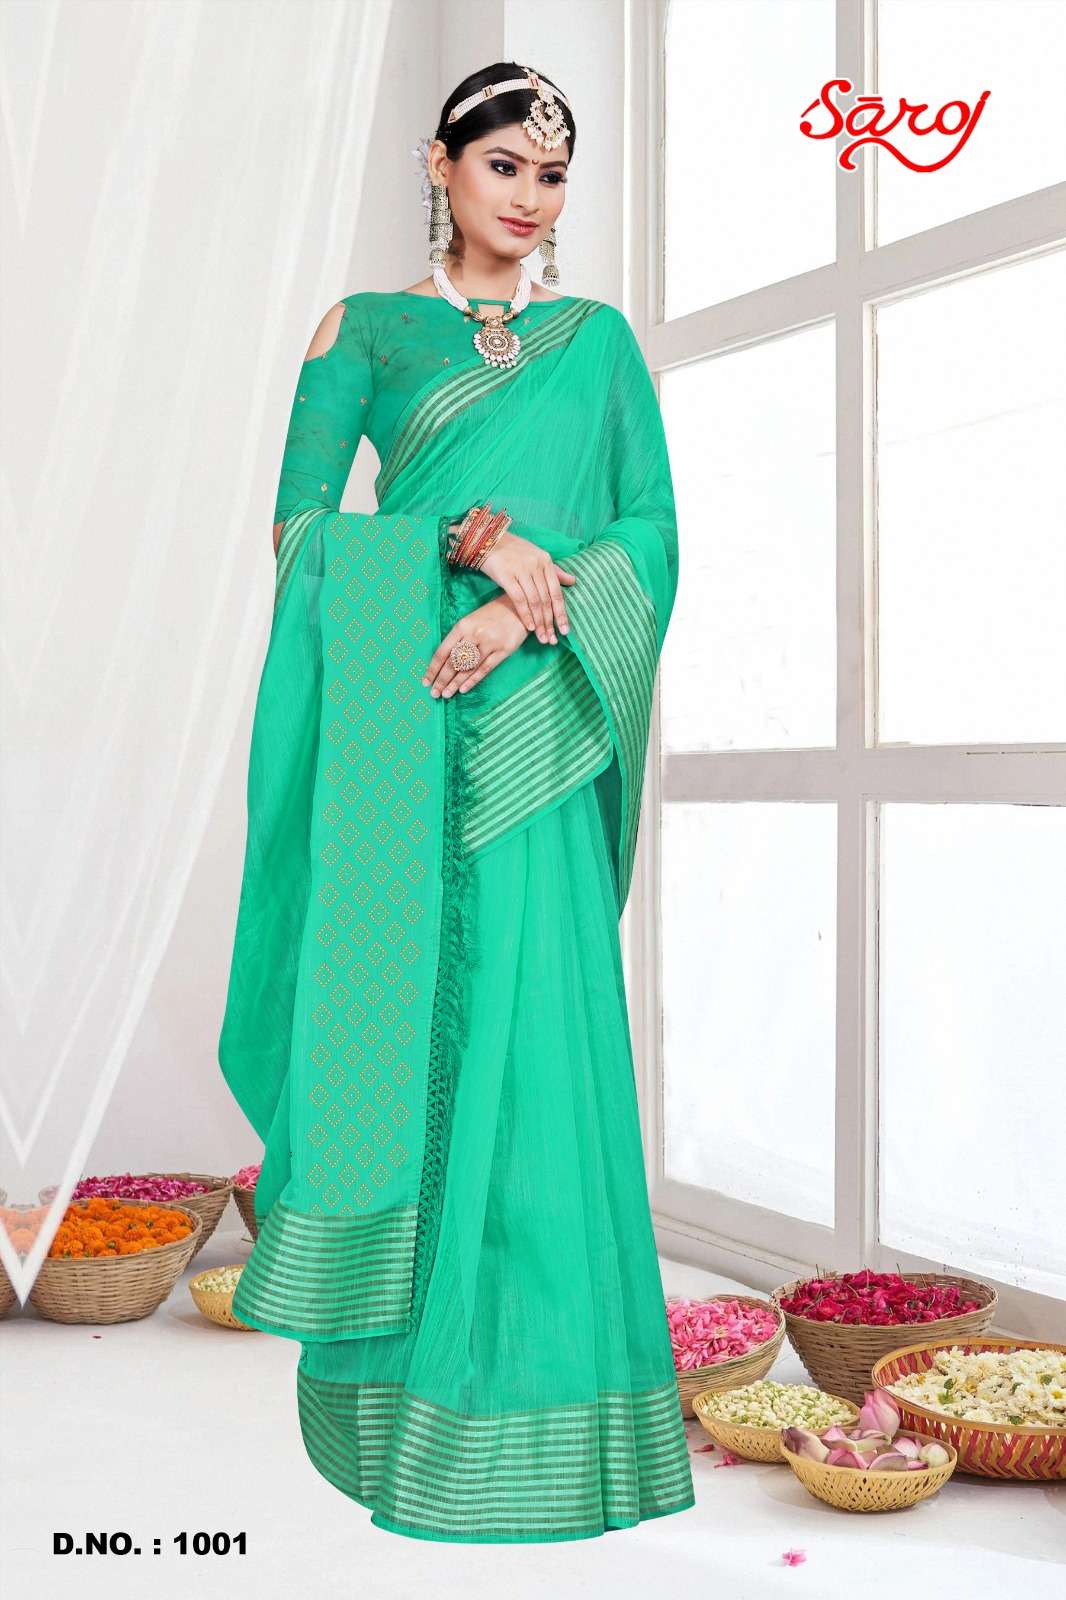 Saroj textile presents Mahotsav vol-2 cotton sarees catalogue